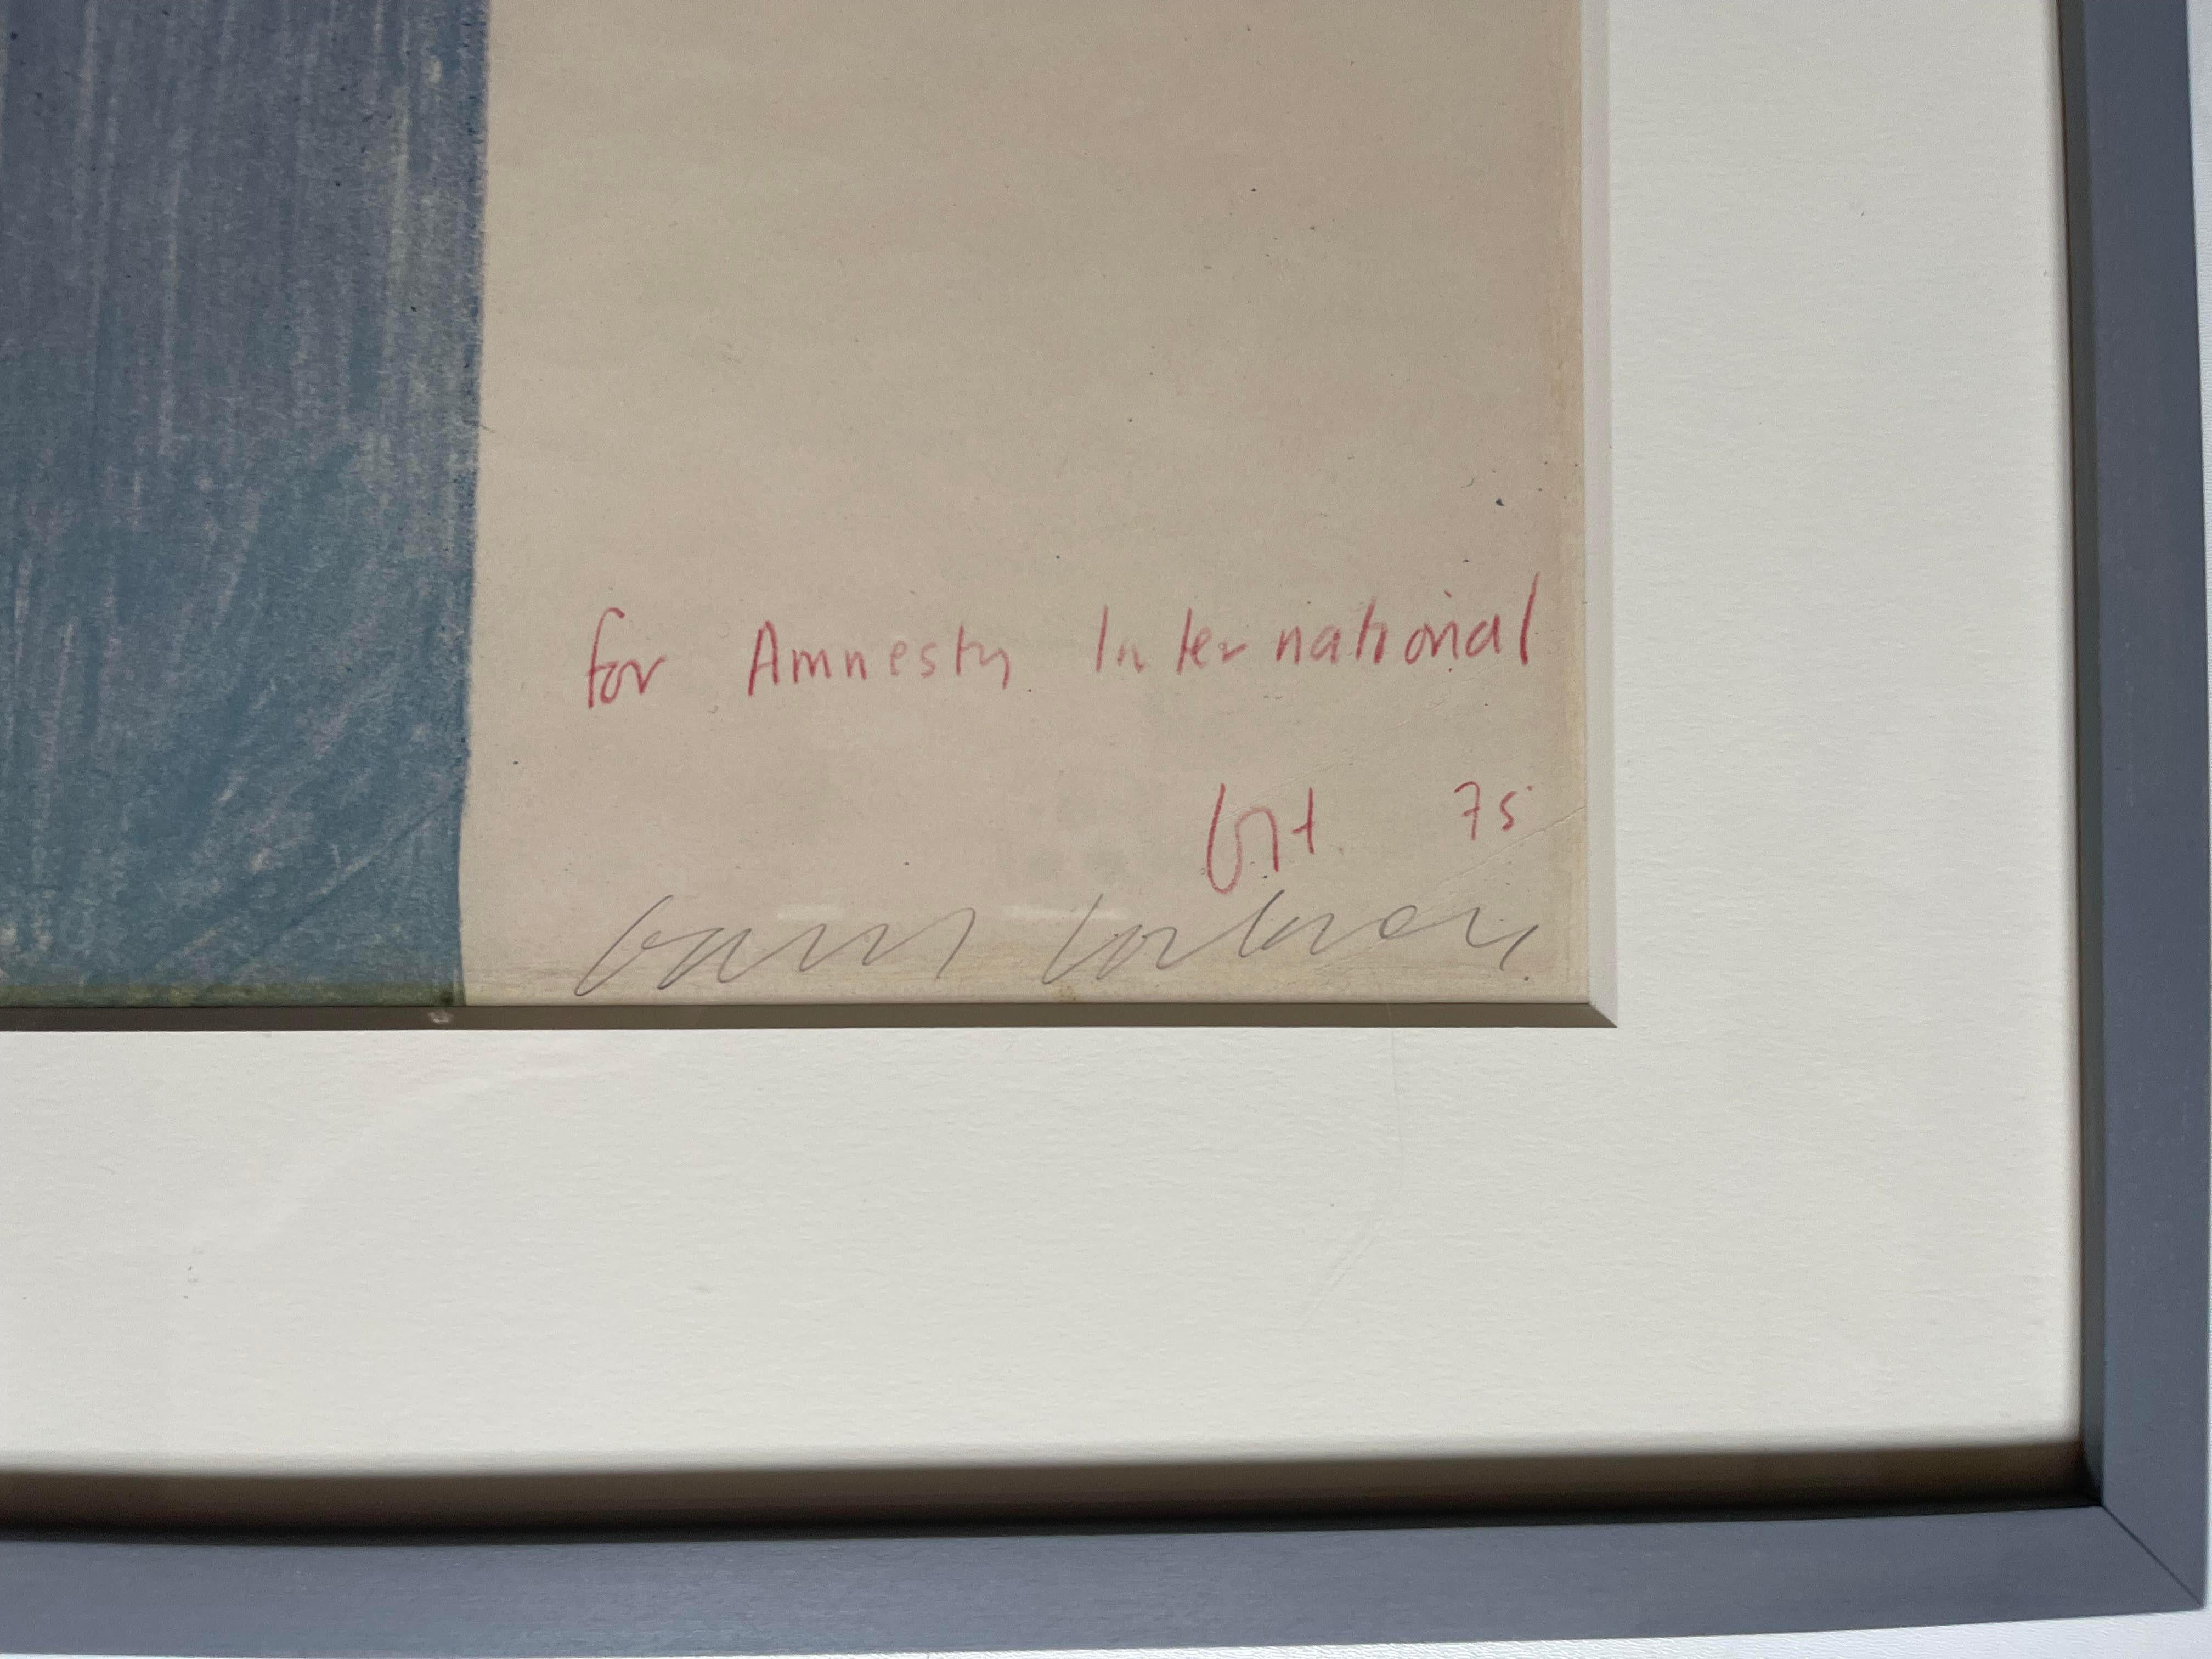 David Hockney
Der Gefangene, für Amnesty International, 1977
Farboffsetlithographie
Handsigniert, nummeriert 17/100 und beschriftet vom Künstler auf der Vorderseite unten rechts
Eleganter handgefertigter Rahmen mit UV-Plexiglas im Lieferumfang
Diese